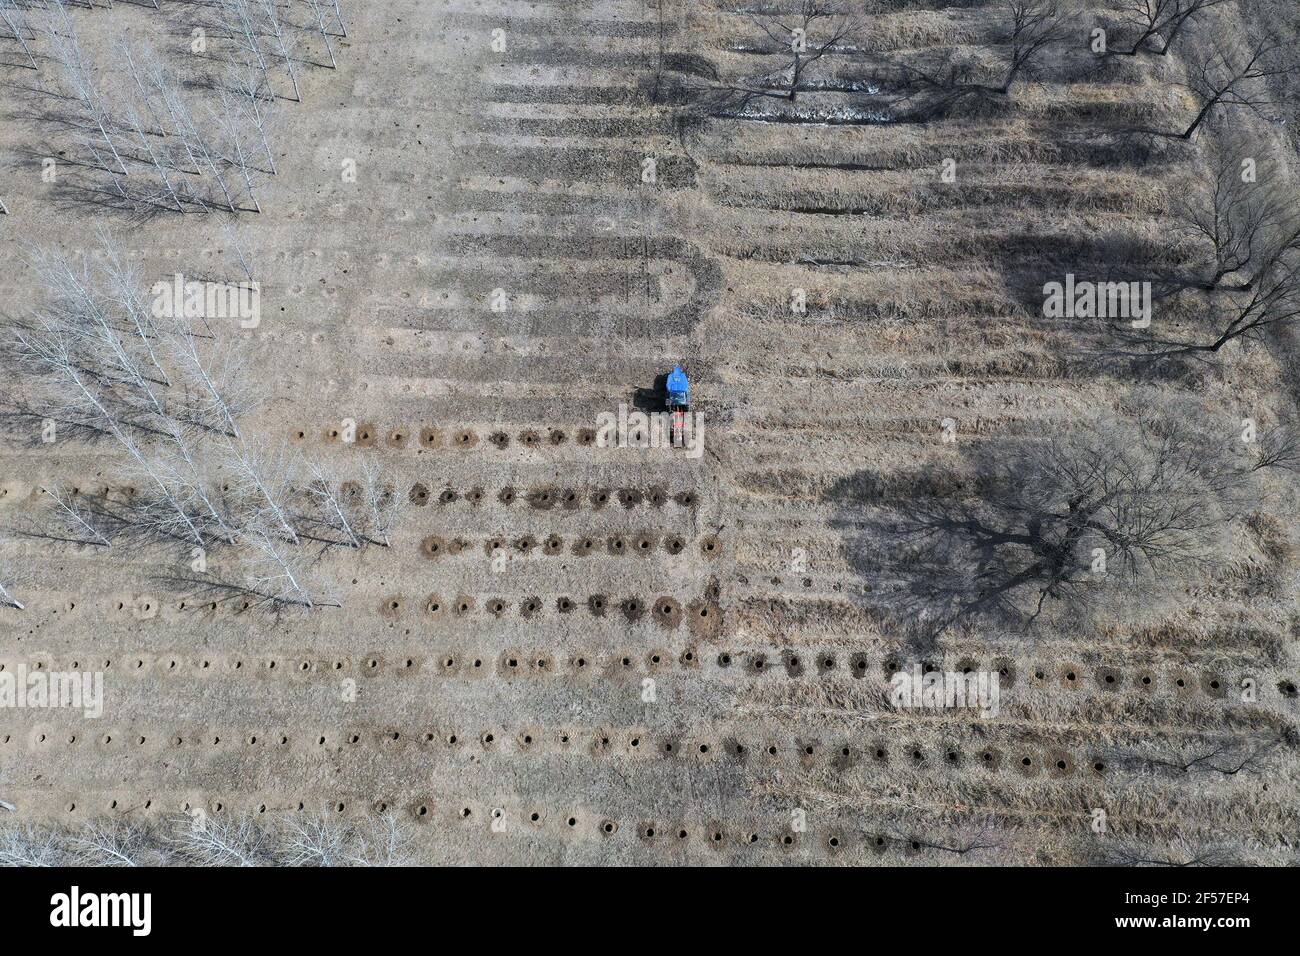 SHENYANG, CHINA - 24. MÄRZ 2021 - Luftbild eine Baumbohrmaschine wird zum Bohren von Bäumen eingesetzt. 24. März 2021, Shenyang, Provinz Liaoning, China. (Foto von Ji Zhe / Costfoto/Sipa USA) Stockfoto